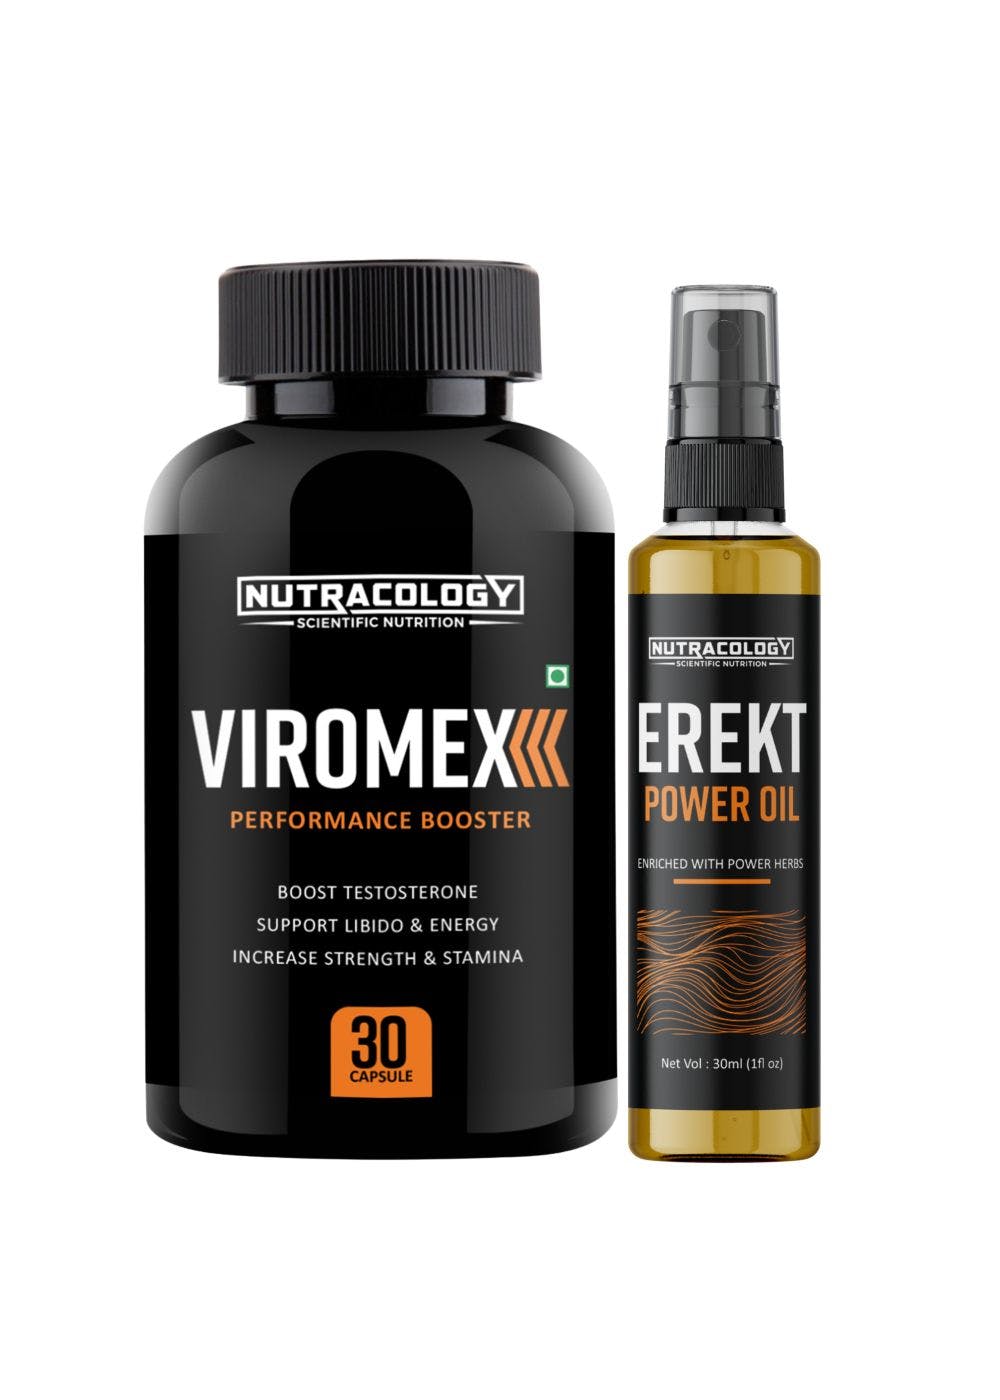  Sexual Wellness Combo Viromex 30 Capsules and Erekt Oil 30ml